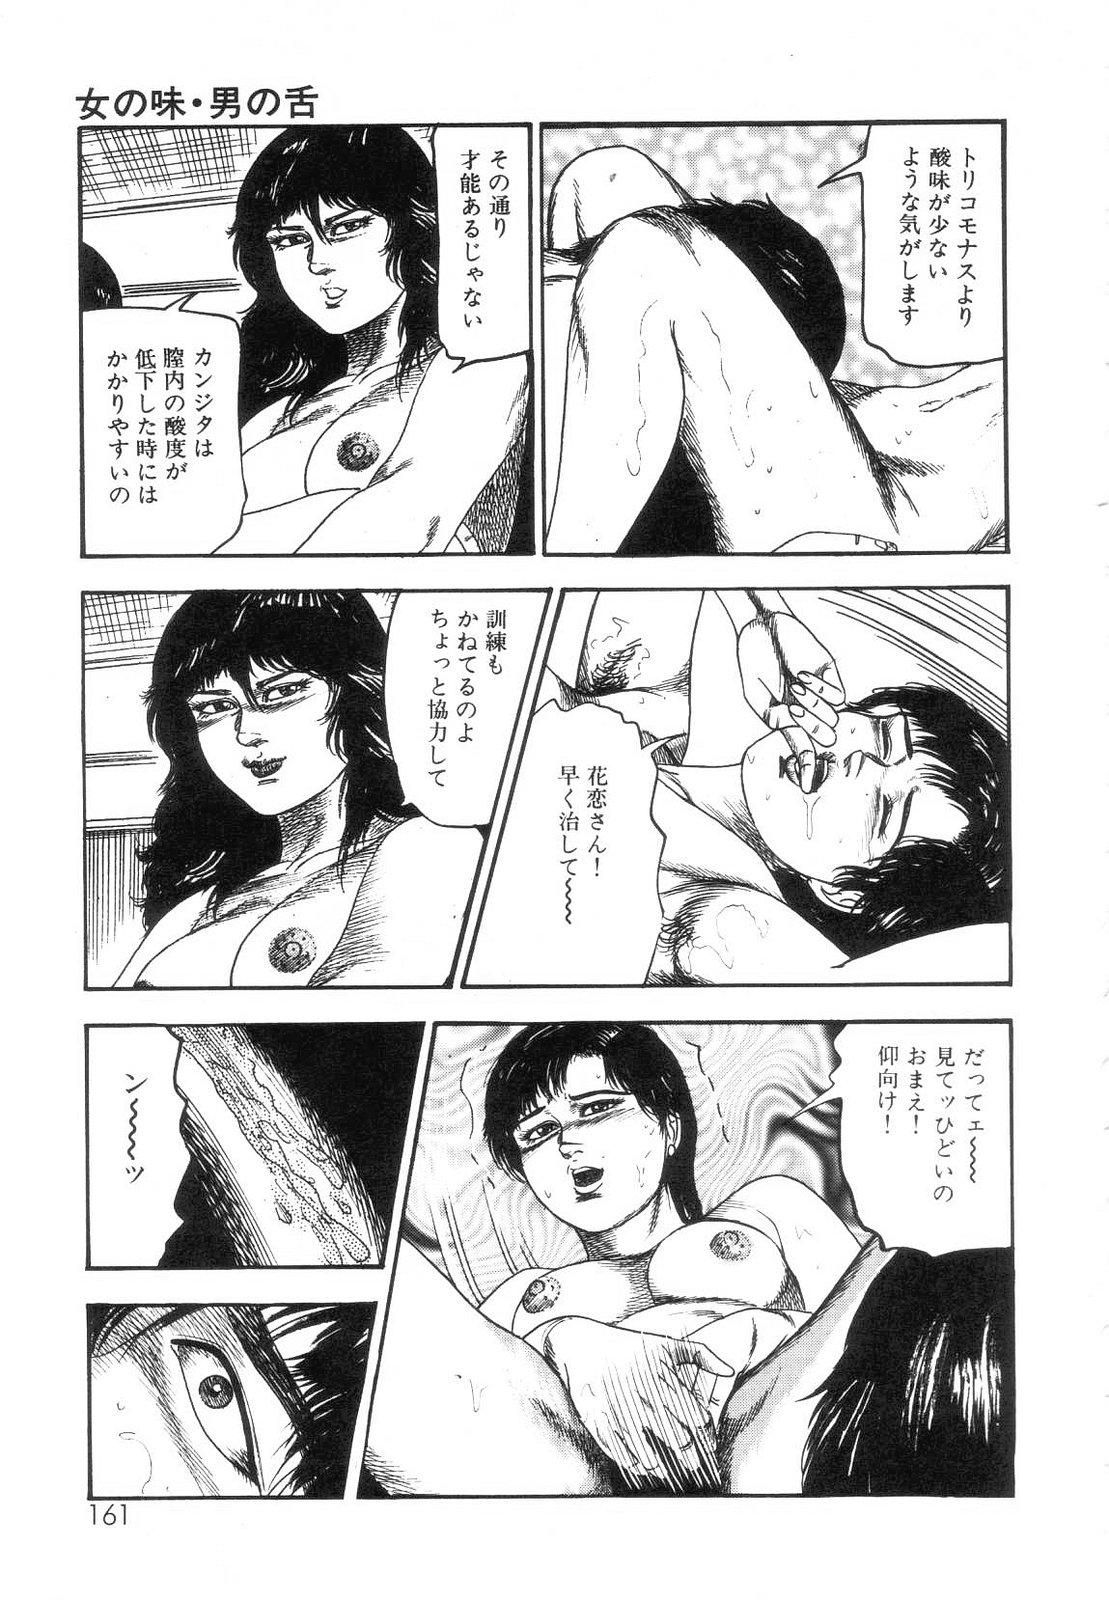 Shiro no Mokushiroku Vol. 7 - Shiiku Ningyou Erika no Shou 162